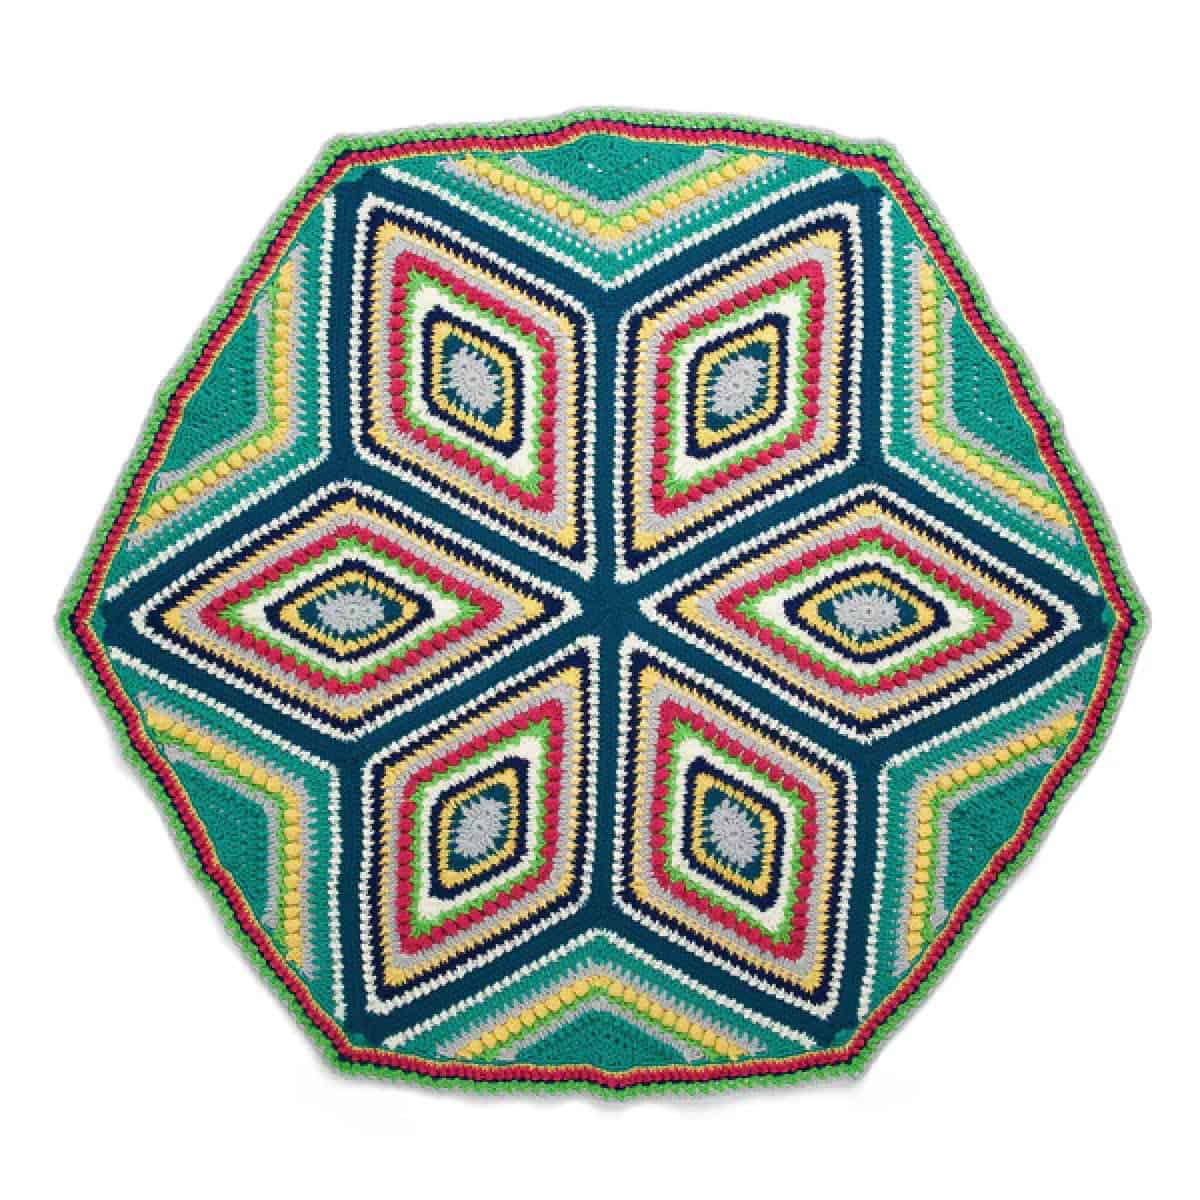 Crochet Study of Geometry Blanket Pattern